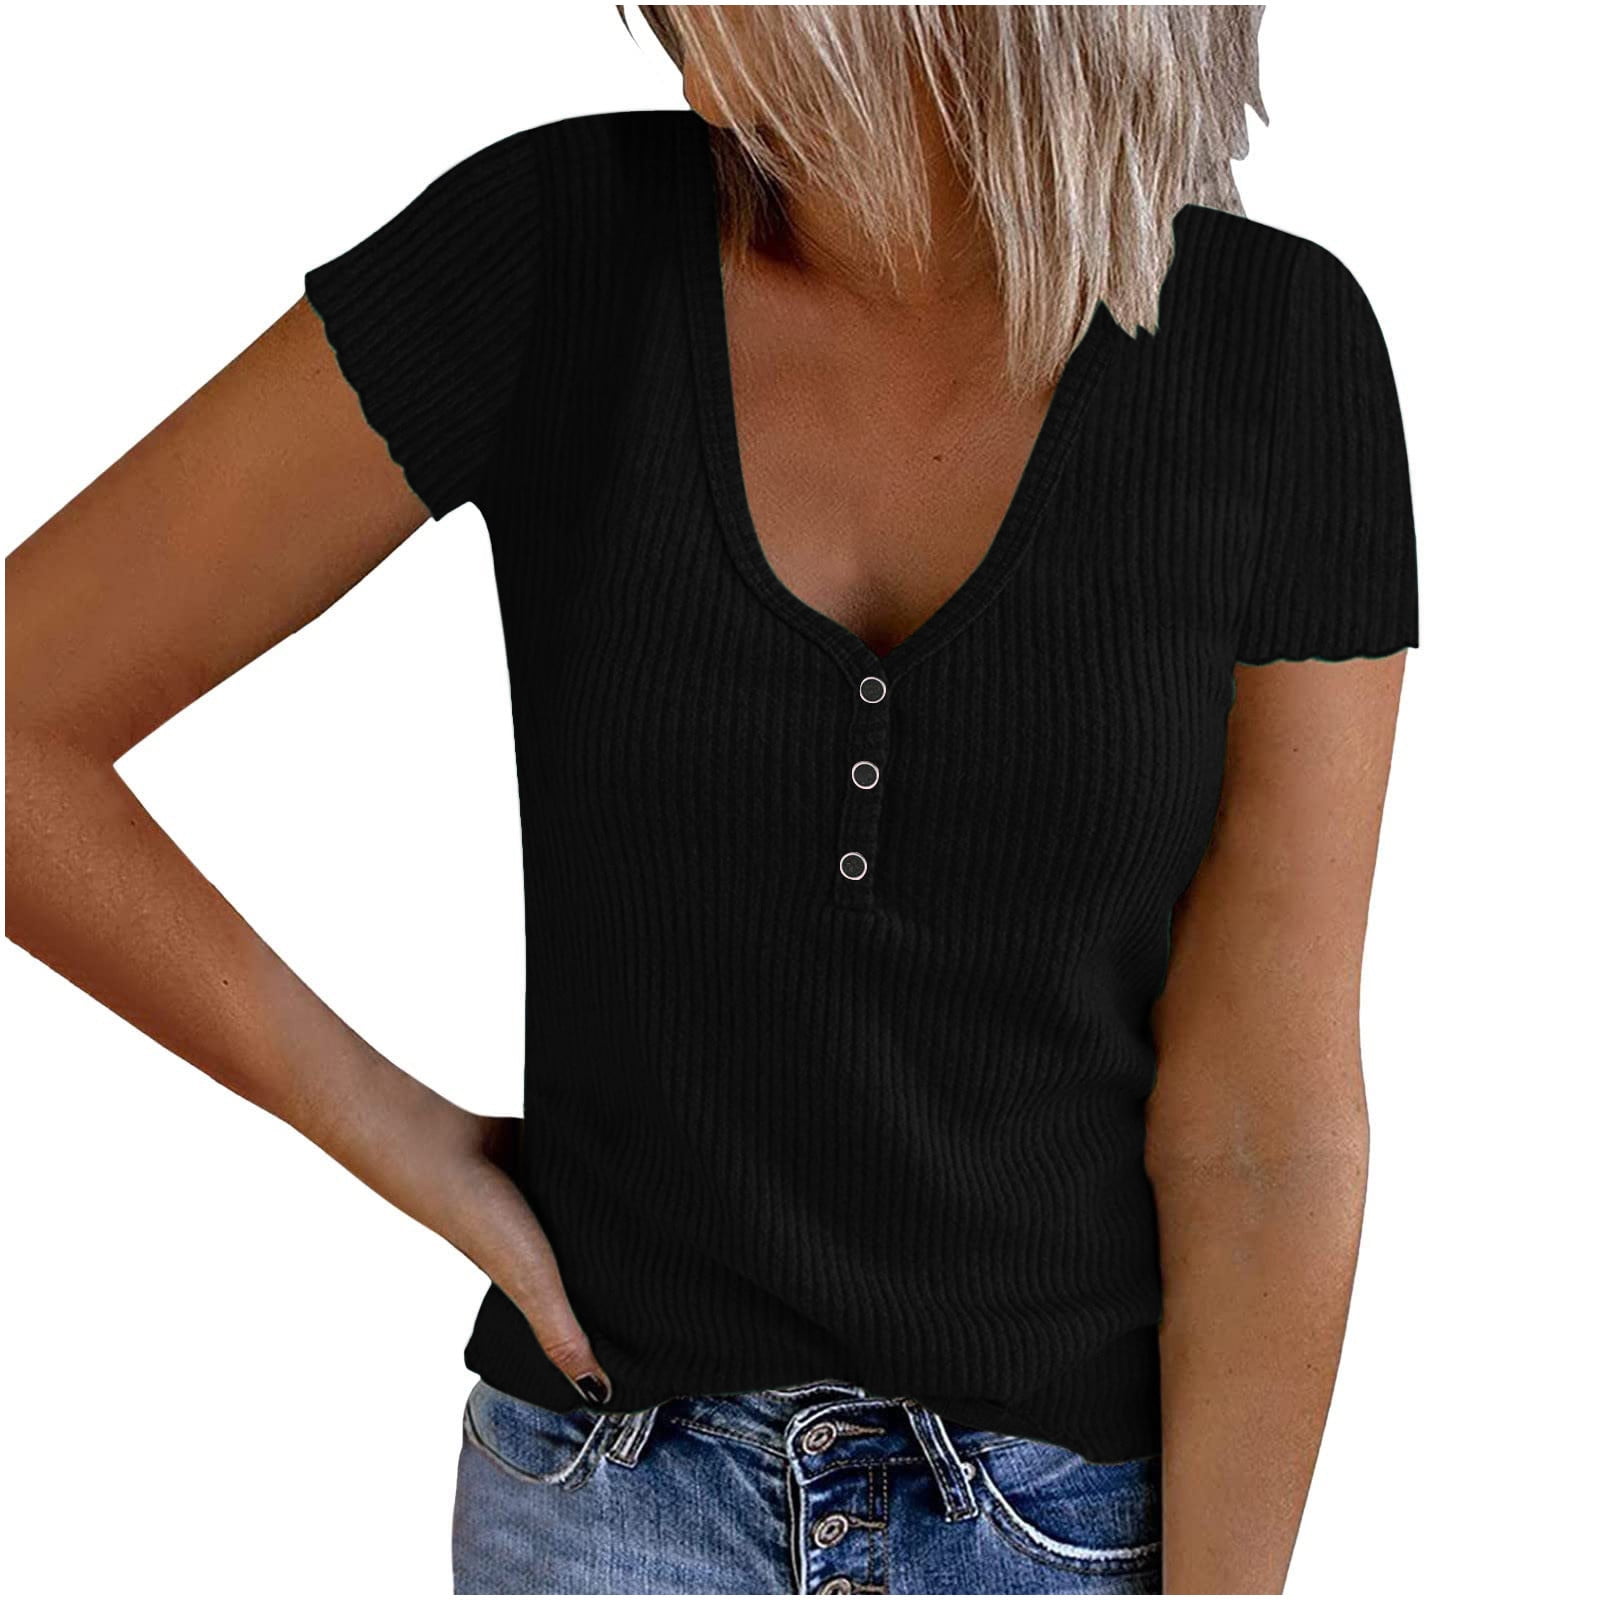 Yyeselk Womens Summer Tops Solid Color V Neck Short Sleeve Shirt